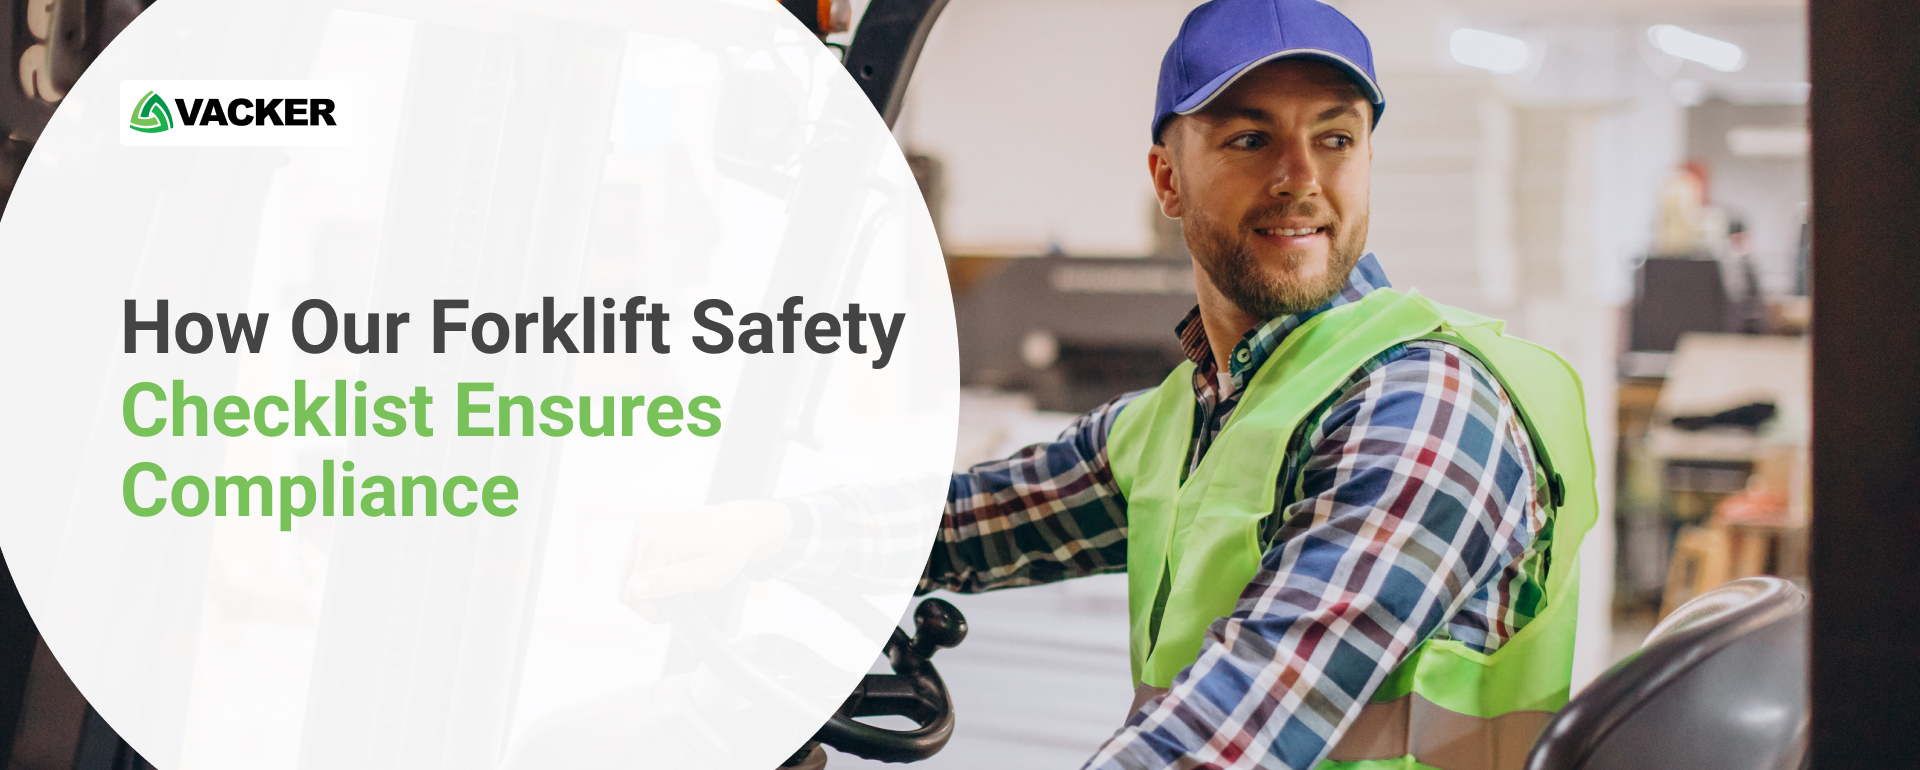 Forklift Safety Checklist